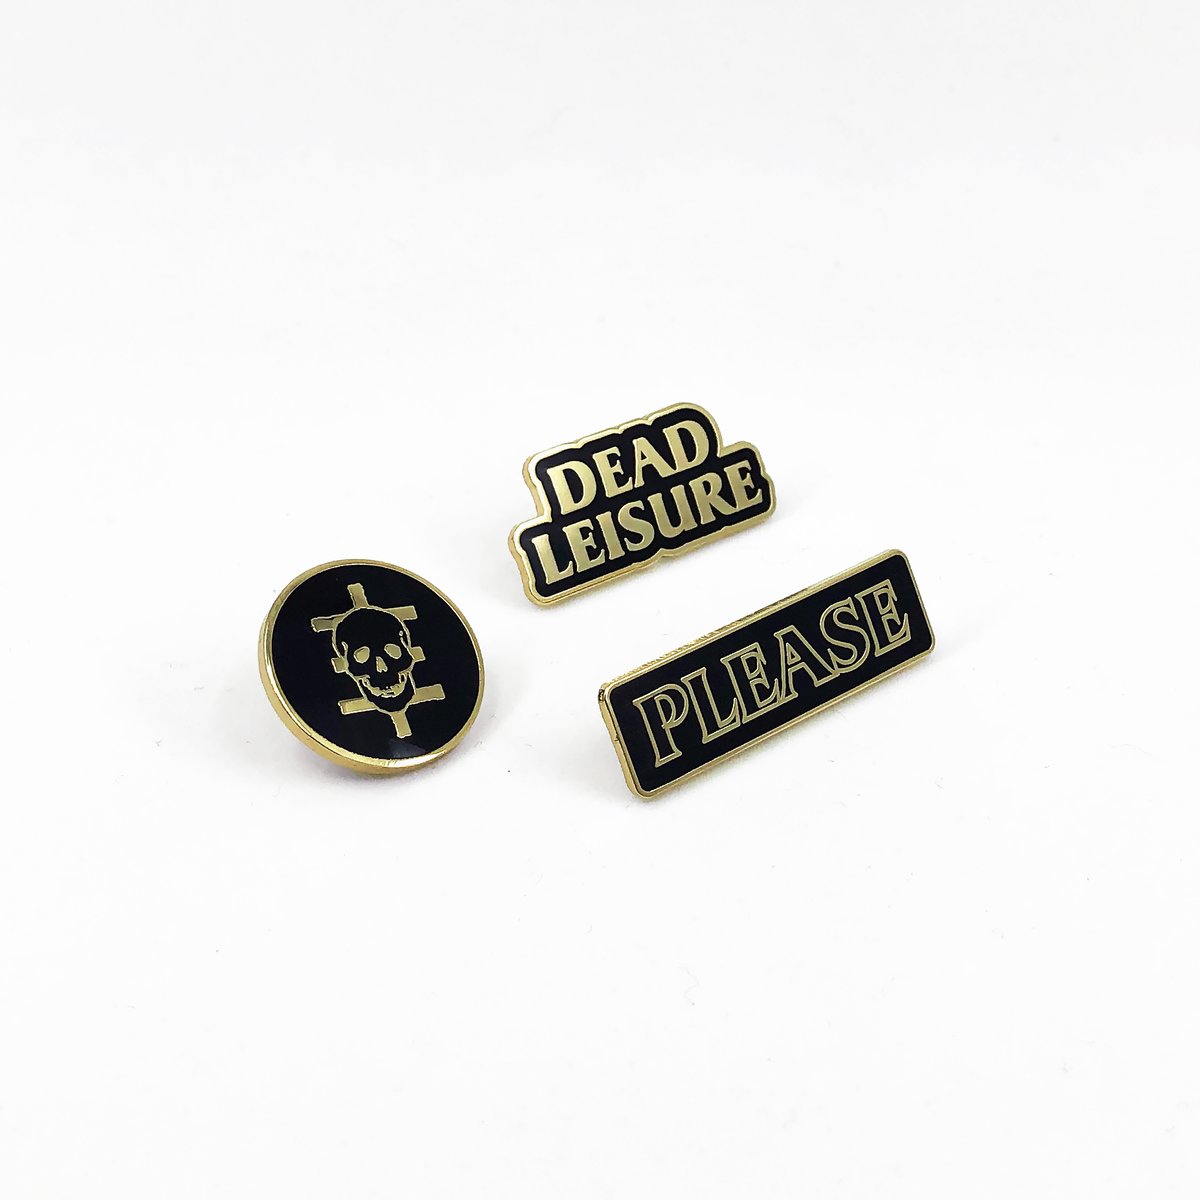 Dead Leisure Enamel Pin set